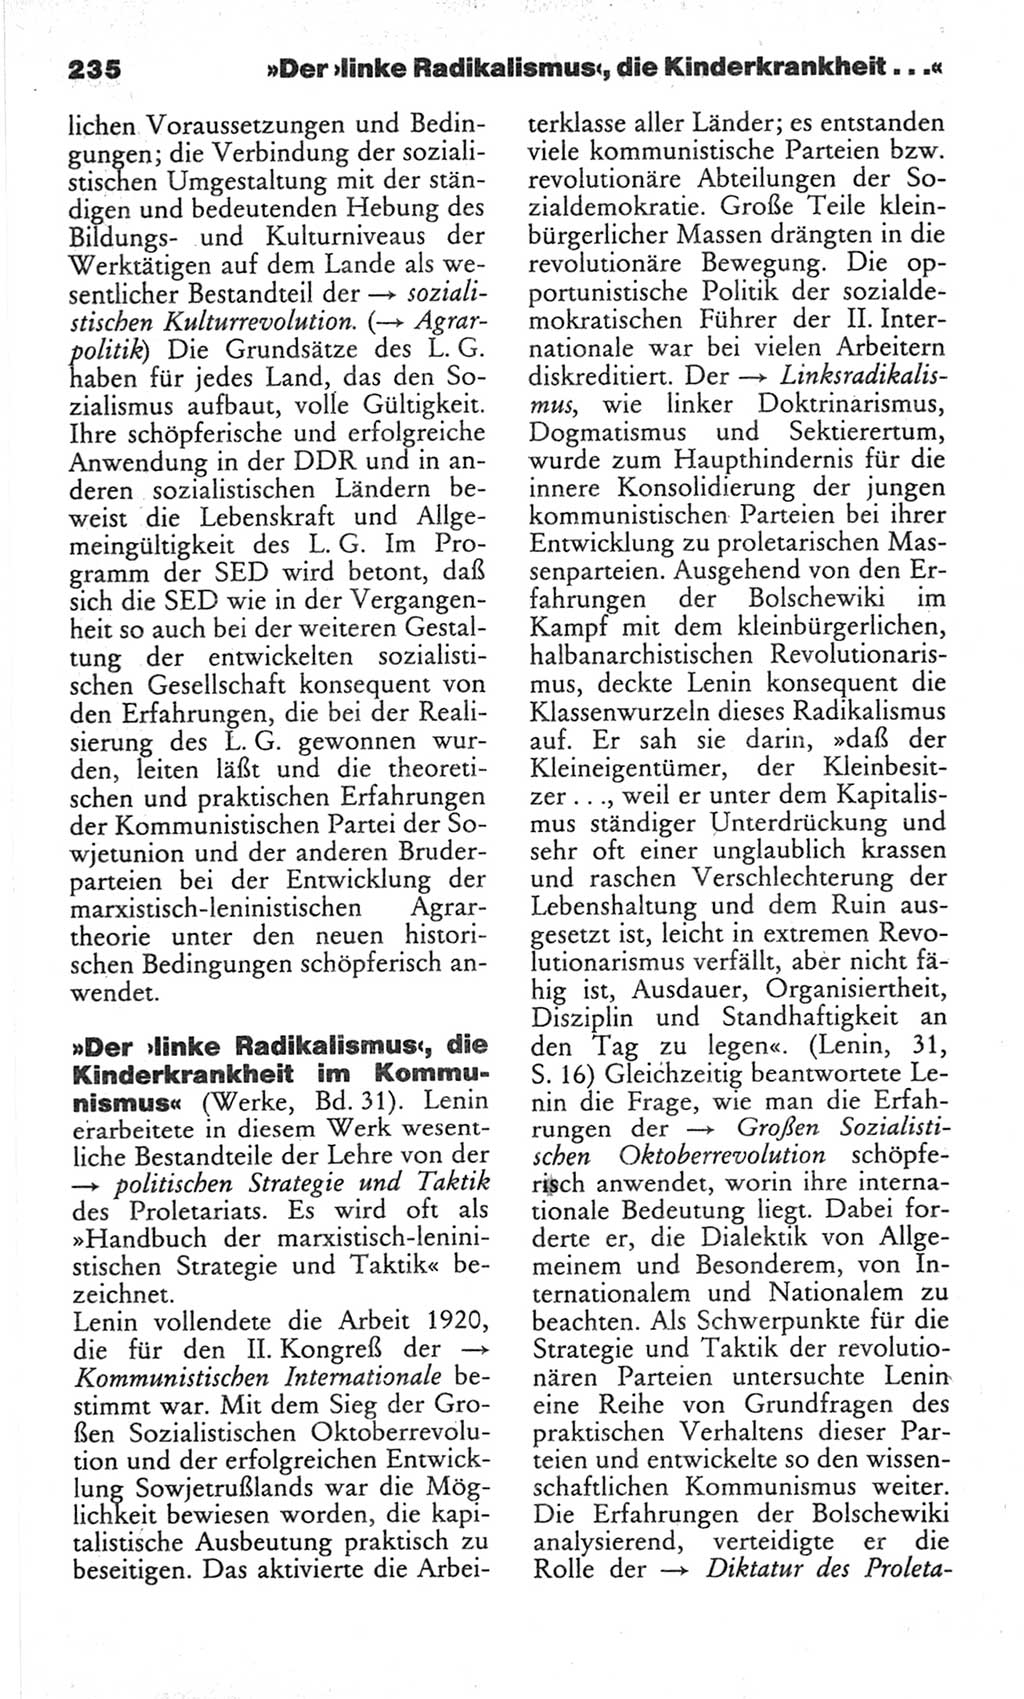 Wörterbuch des wissenschaftlichen Kommunismus [Deutsche Demokratische Republik (DDR)] 1982, Seite 235 (Wb. wiss. Komm. DDR 1982, S. 235)